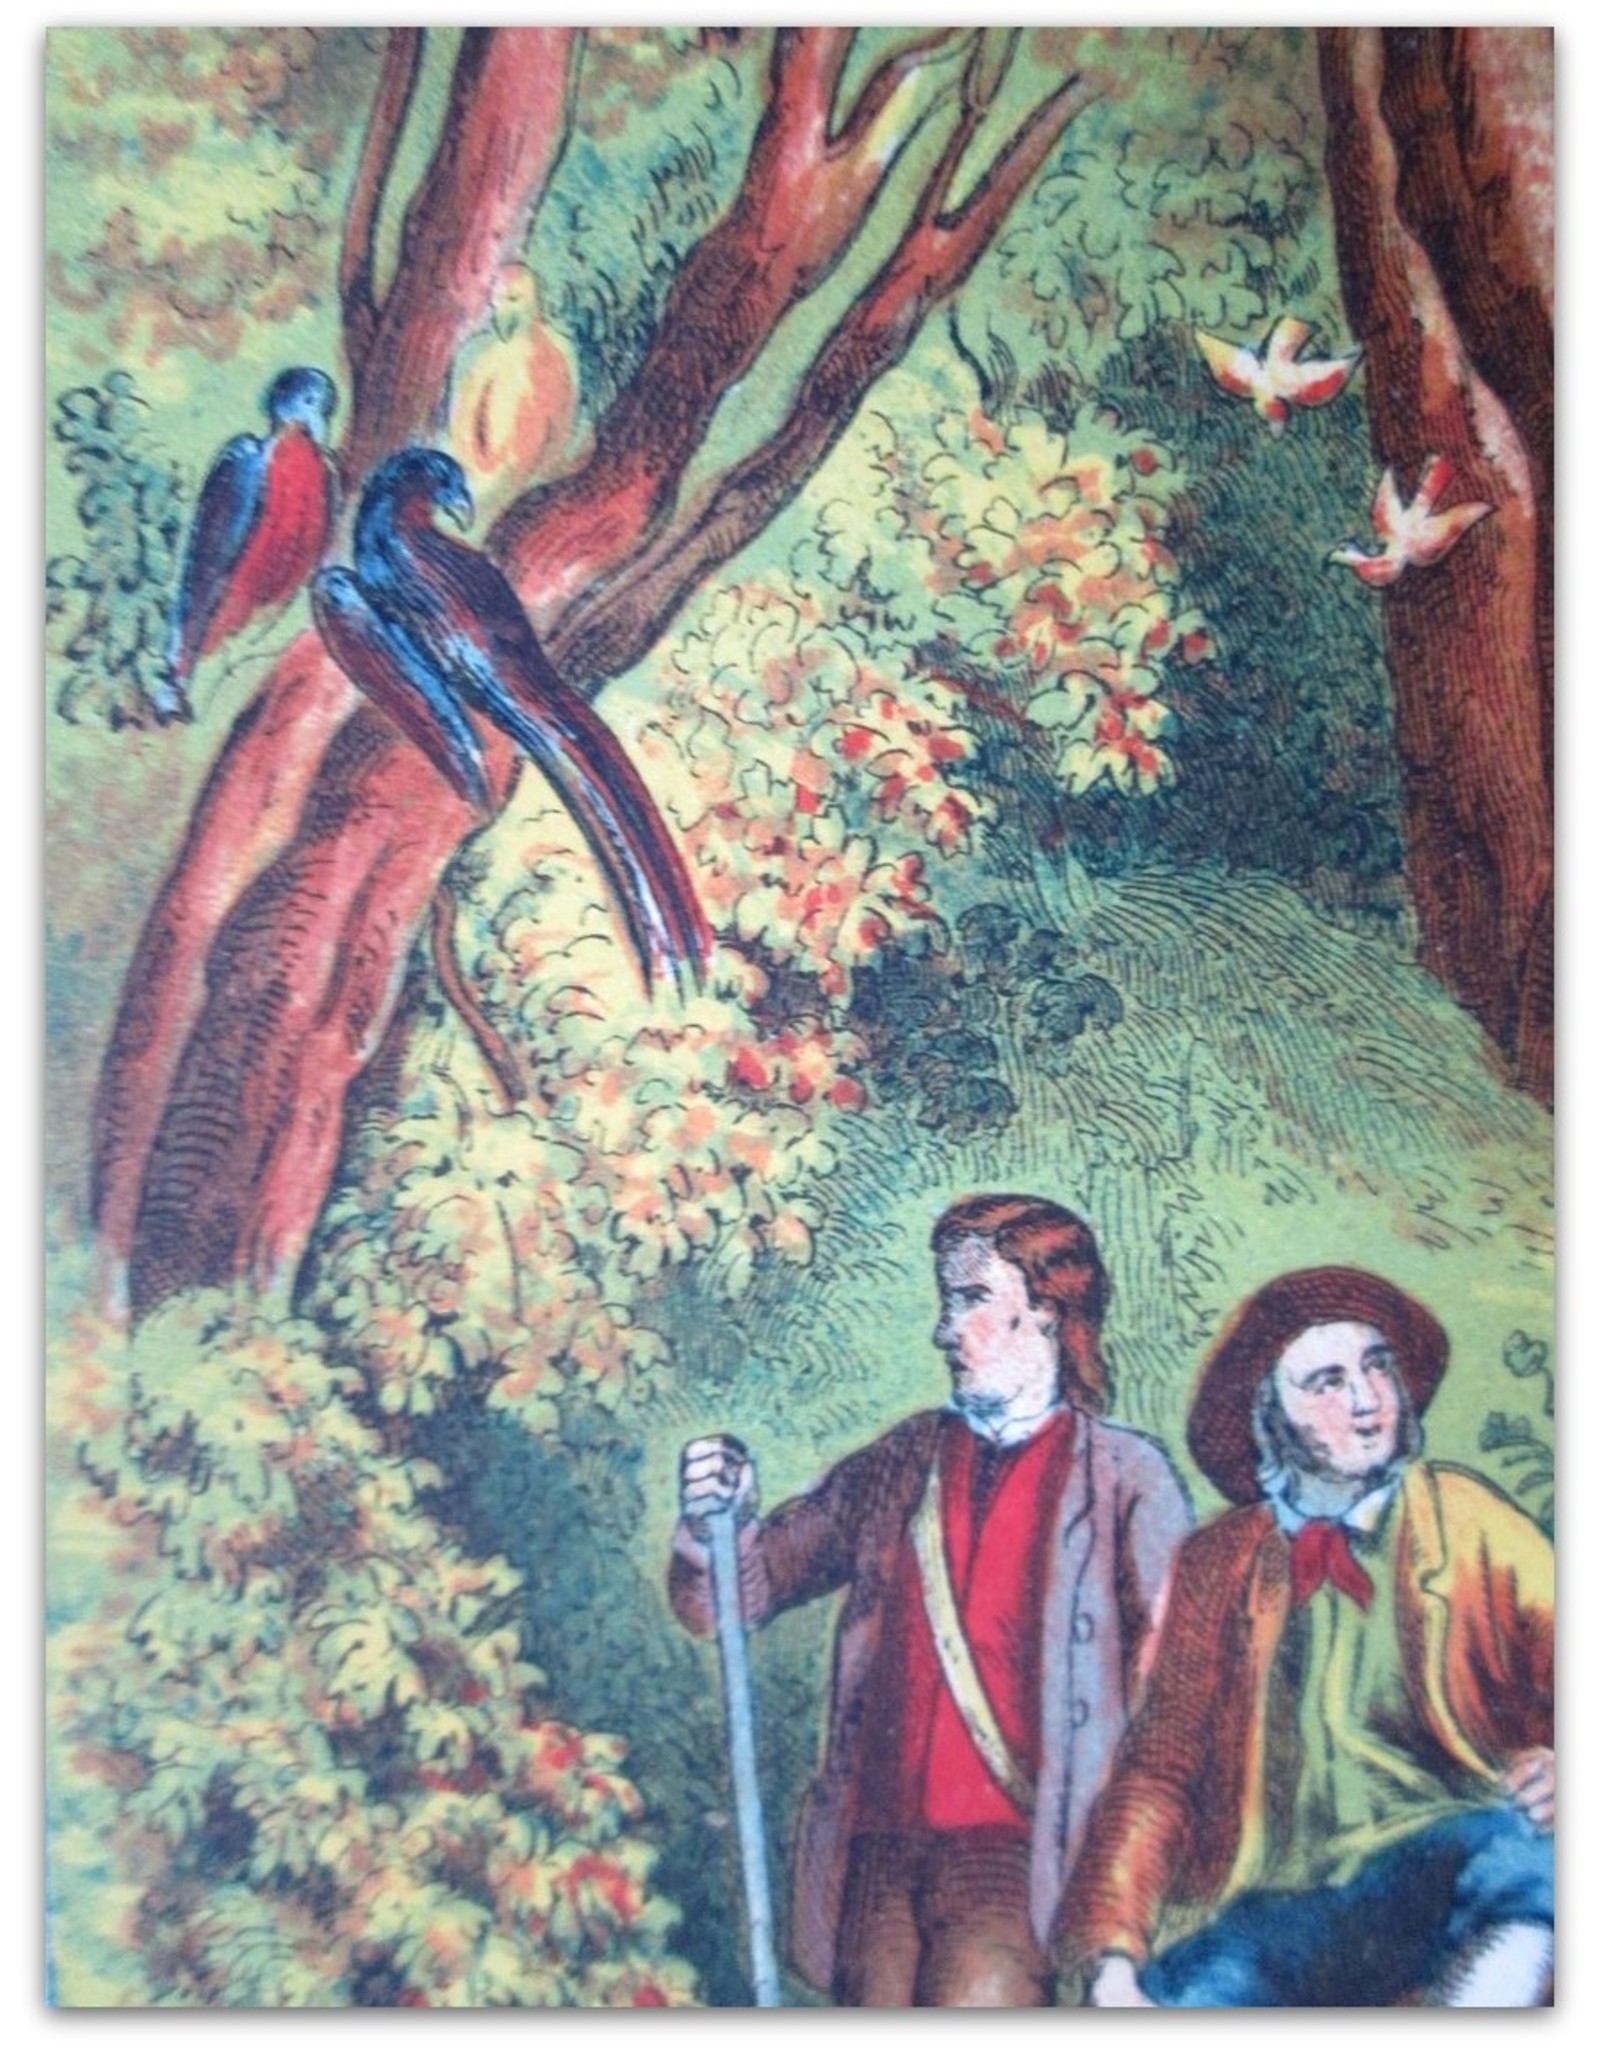 [Johann David Wyss] - De Zwitsersche Robinson Crusoe. Eene geschiedenis; voor kinderen naverteld door J.J.A. Goeverneur